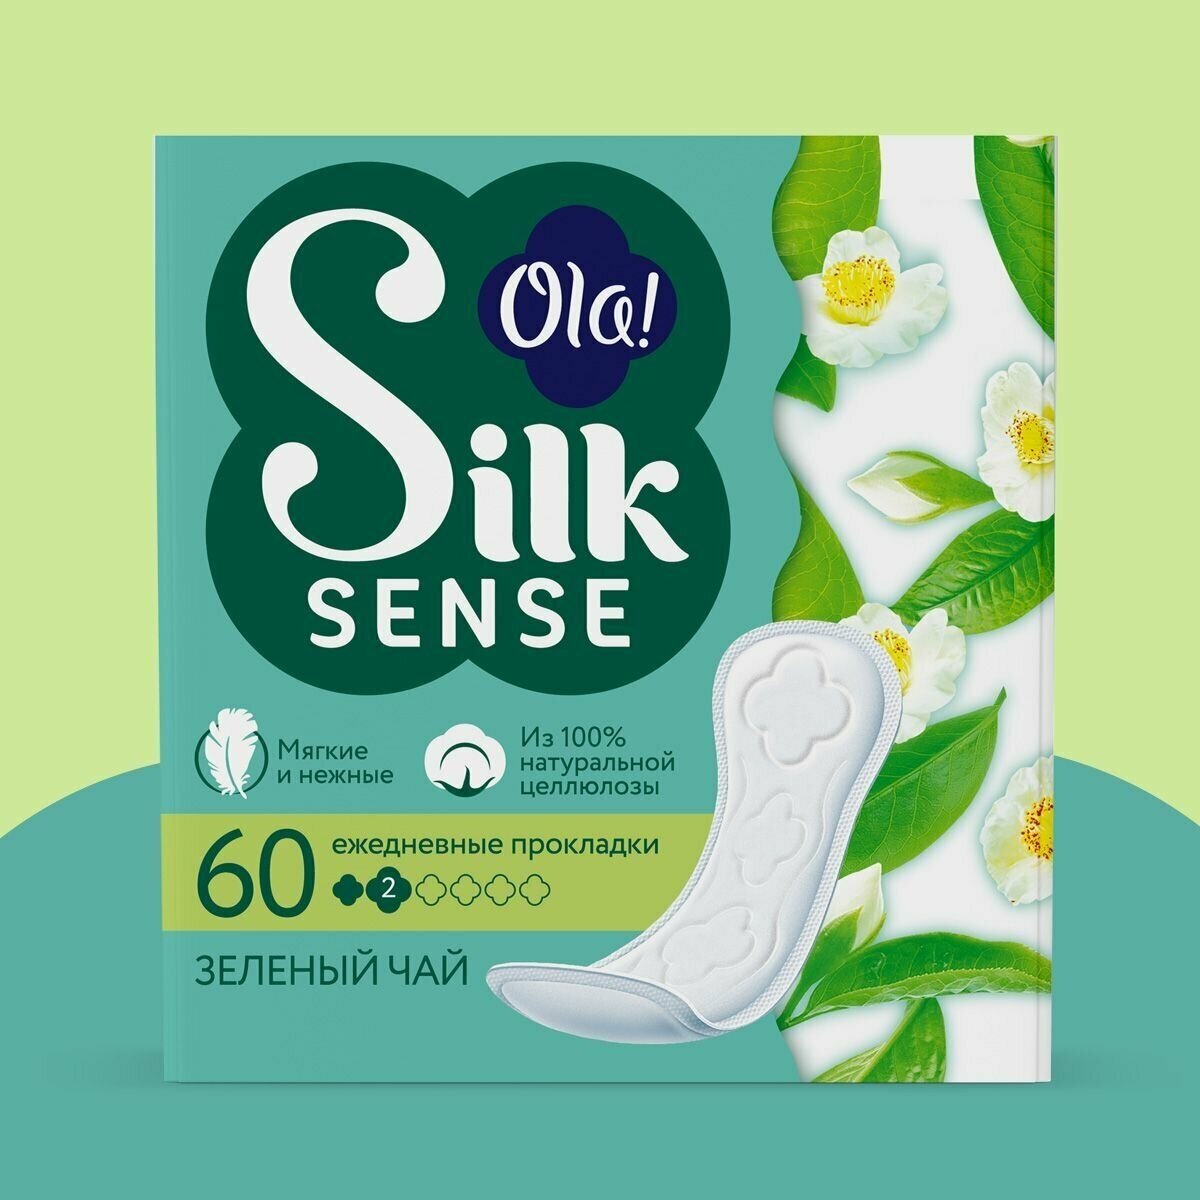 Ежедневные мягкие прокладки Ola! Silk Sense, аромат Зеленый чай, 60 шт.